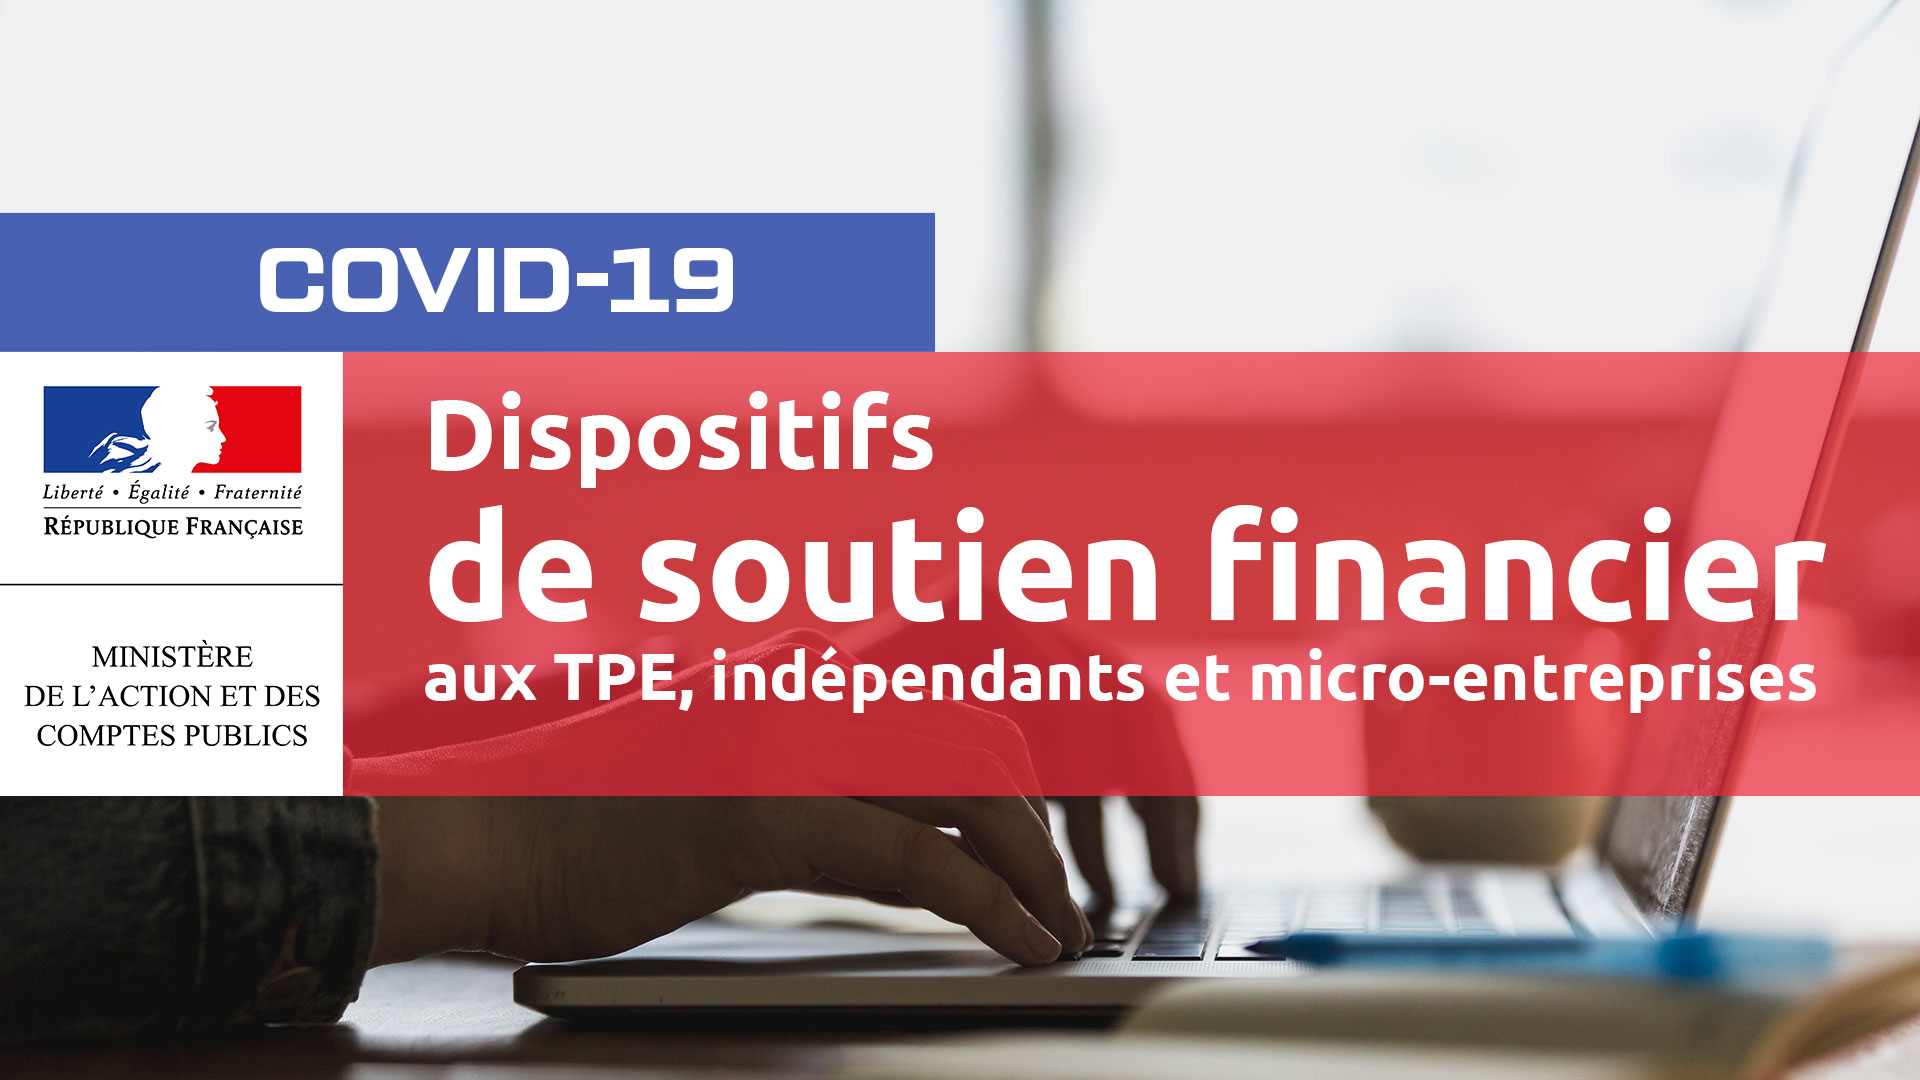 dispostifs-de-soutien-TPE-independants-micro-entreprises-2020-04-15